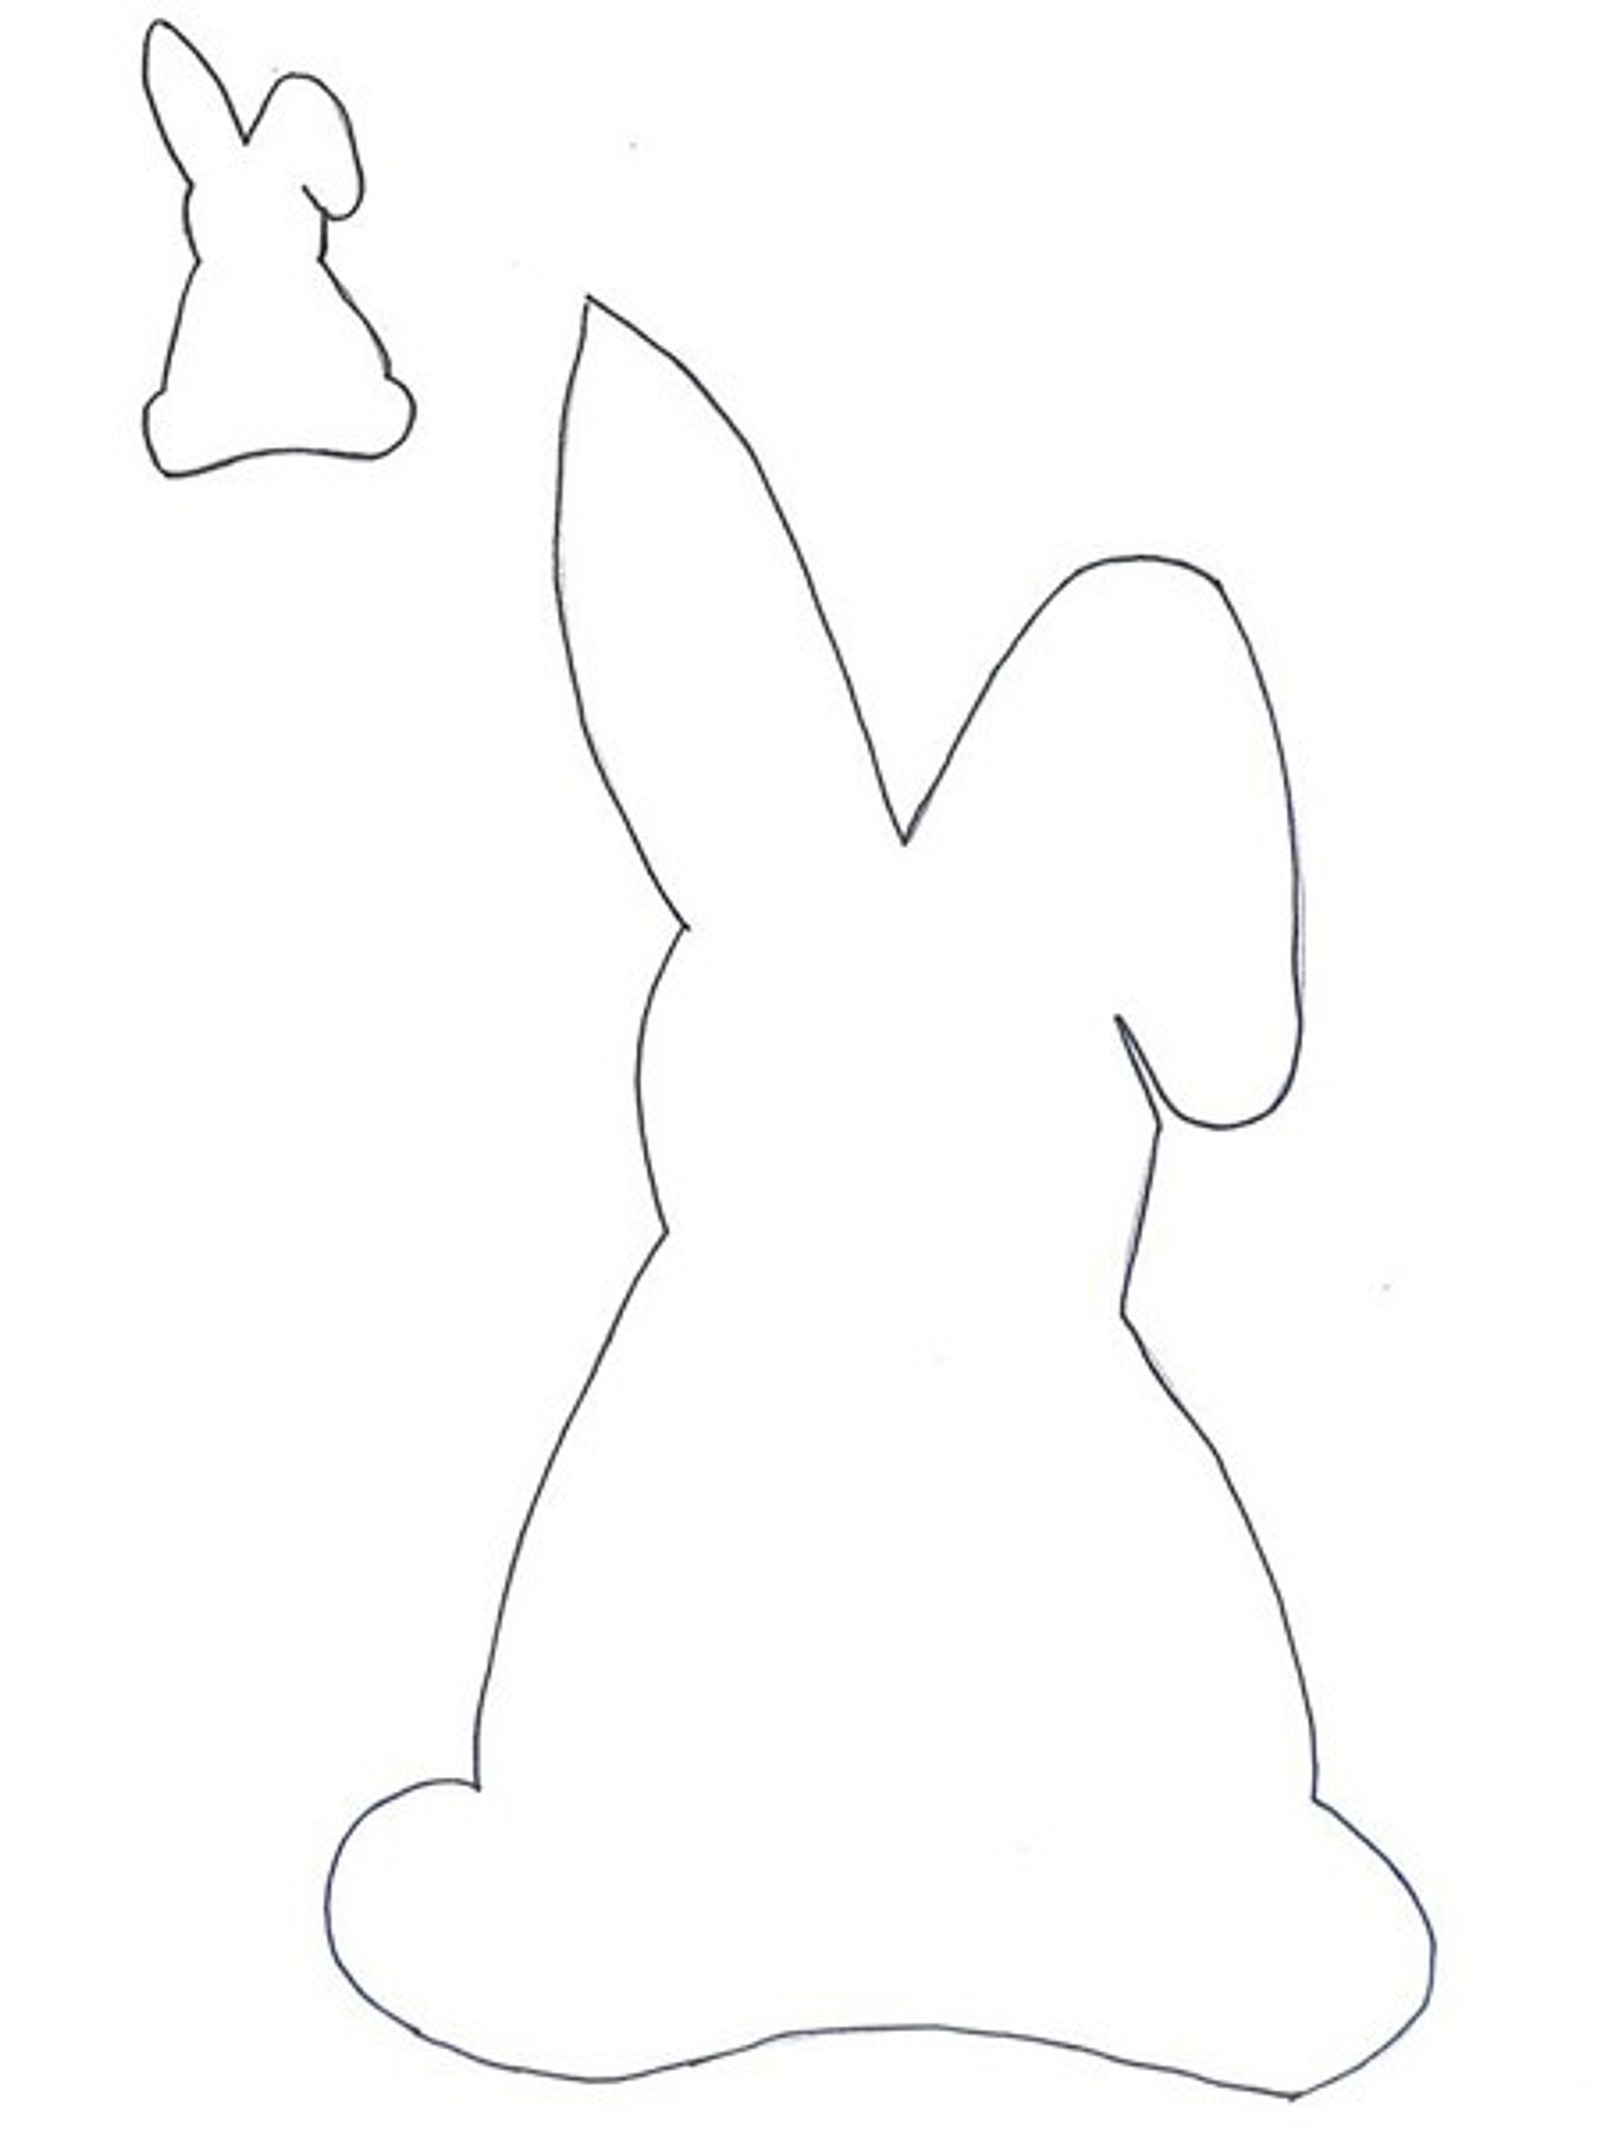 Выкройка пасхального зайца. Лекало пасхального кролика. Трафарет пасхального зайца. Пасхальный зайчик шаблон. Пасхальный кролик трафарет.